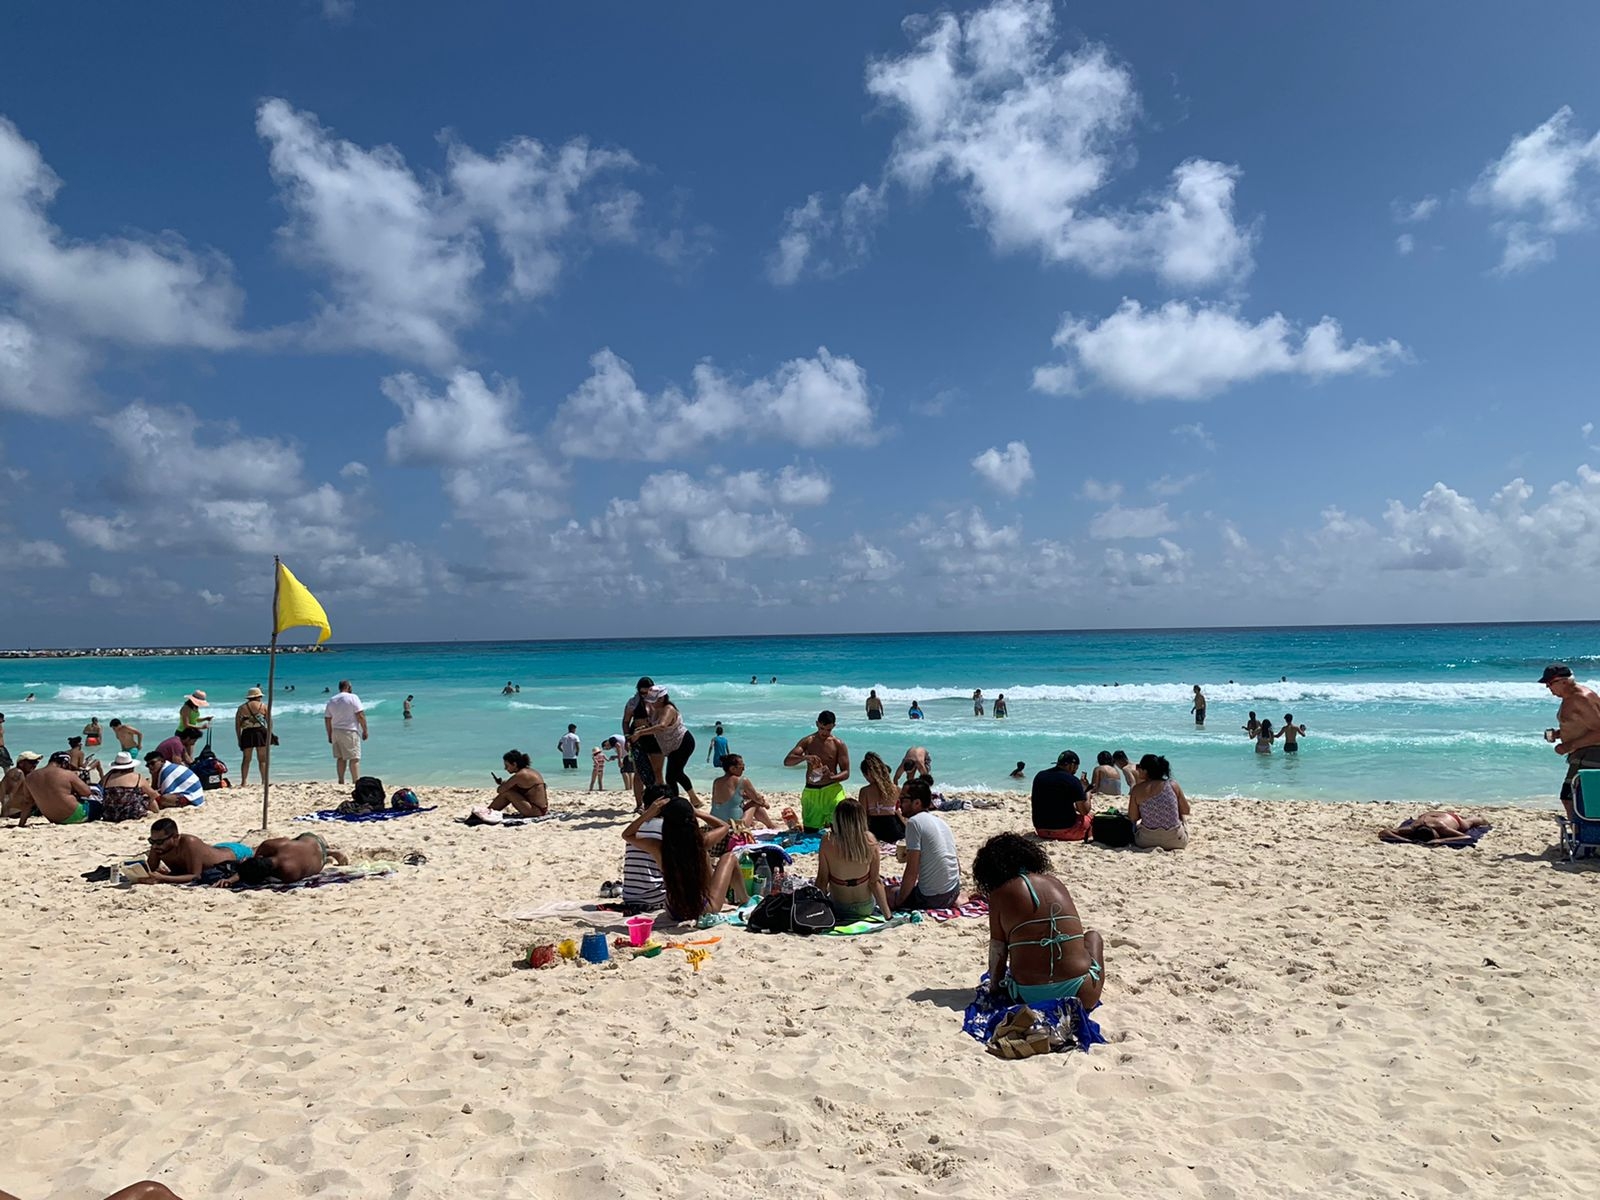 Algunas zonas de Playa Gaviota Azul en Cancún lucieron con turistas descansando en la área blanca del destino turístico